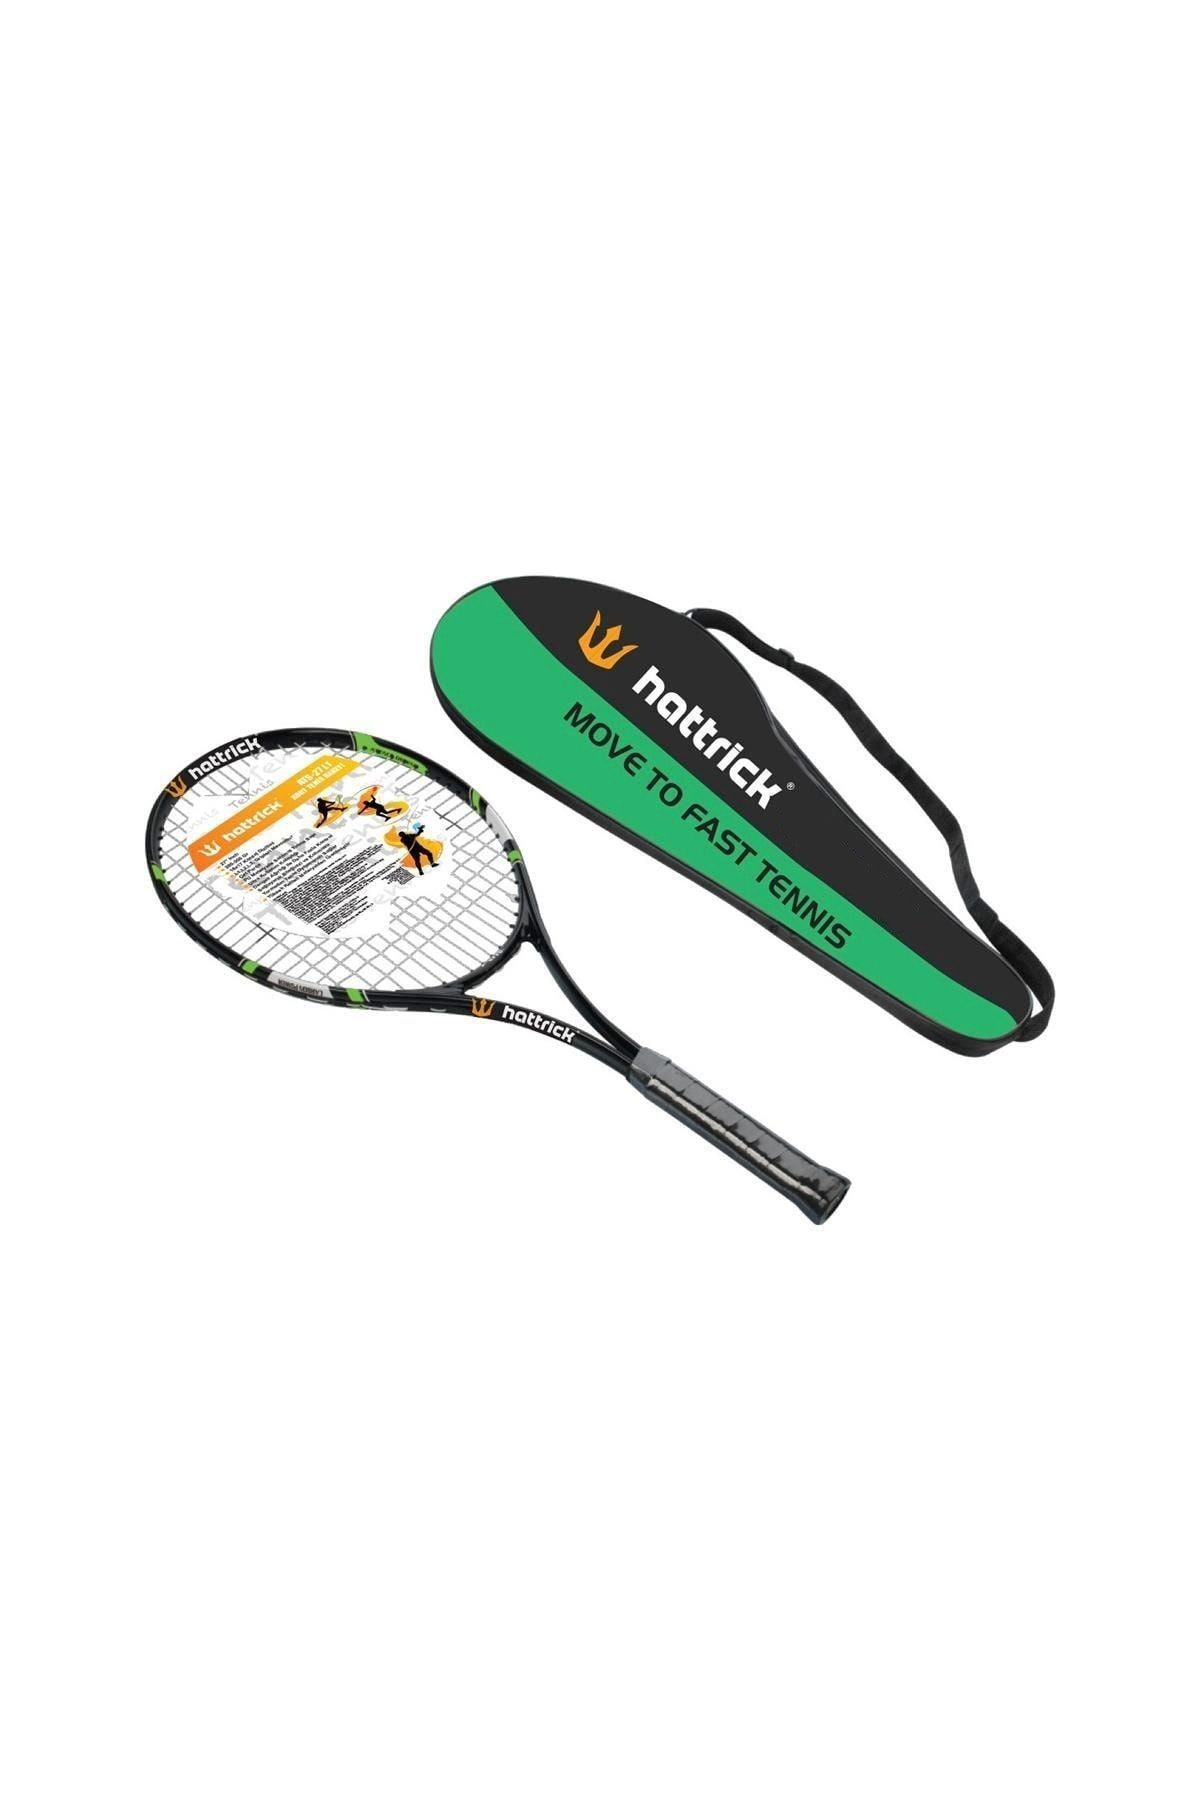 Hattrick Ats Çocuk Tenis Raketi 21 Inch Yeşil